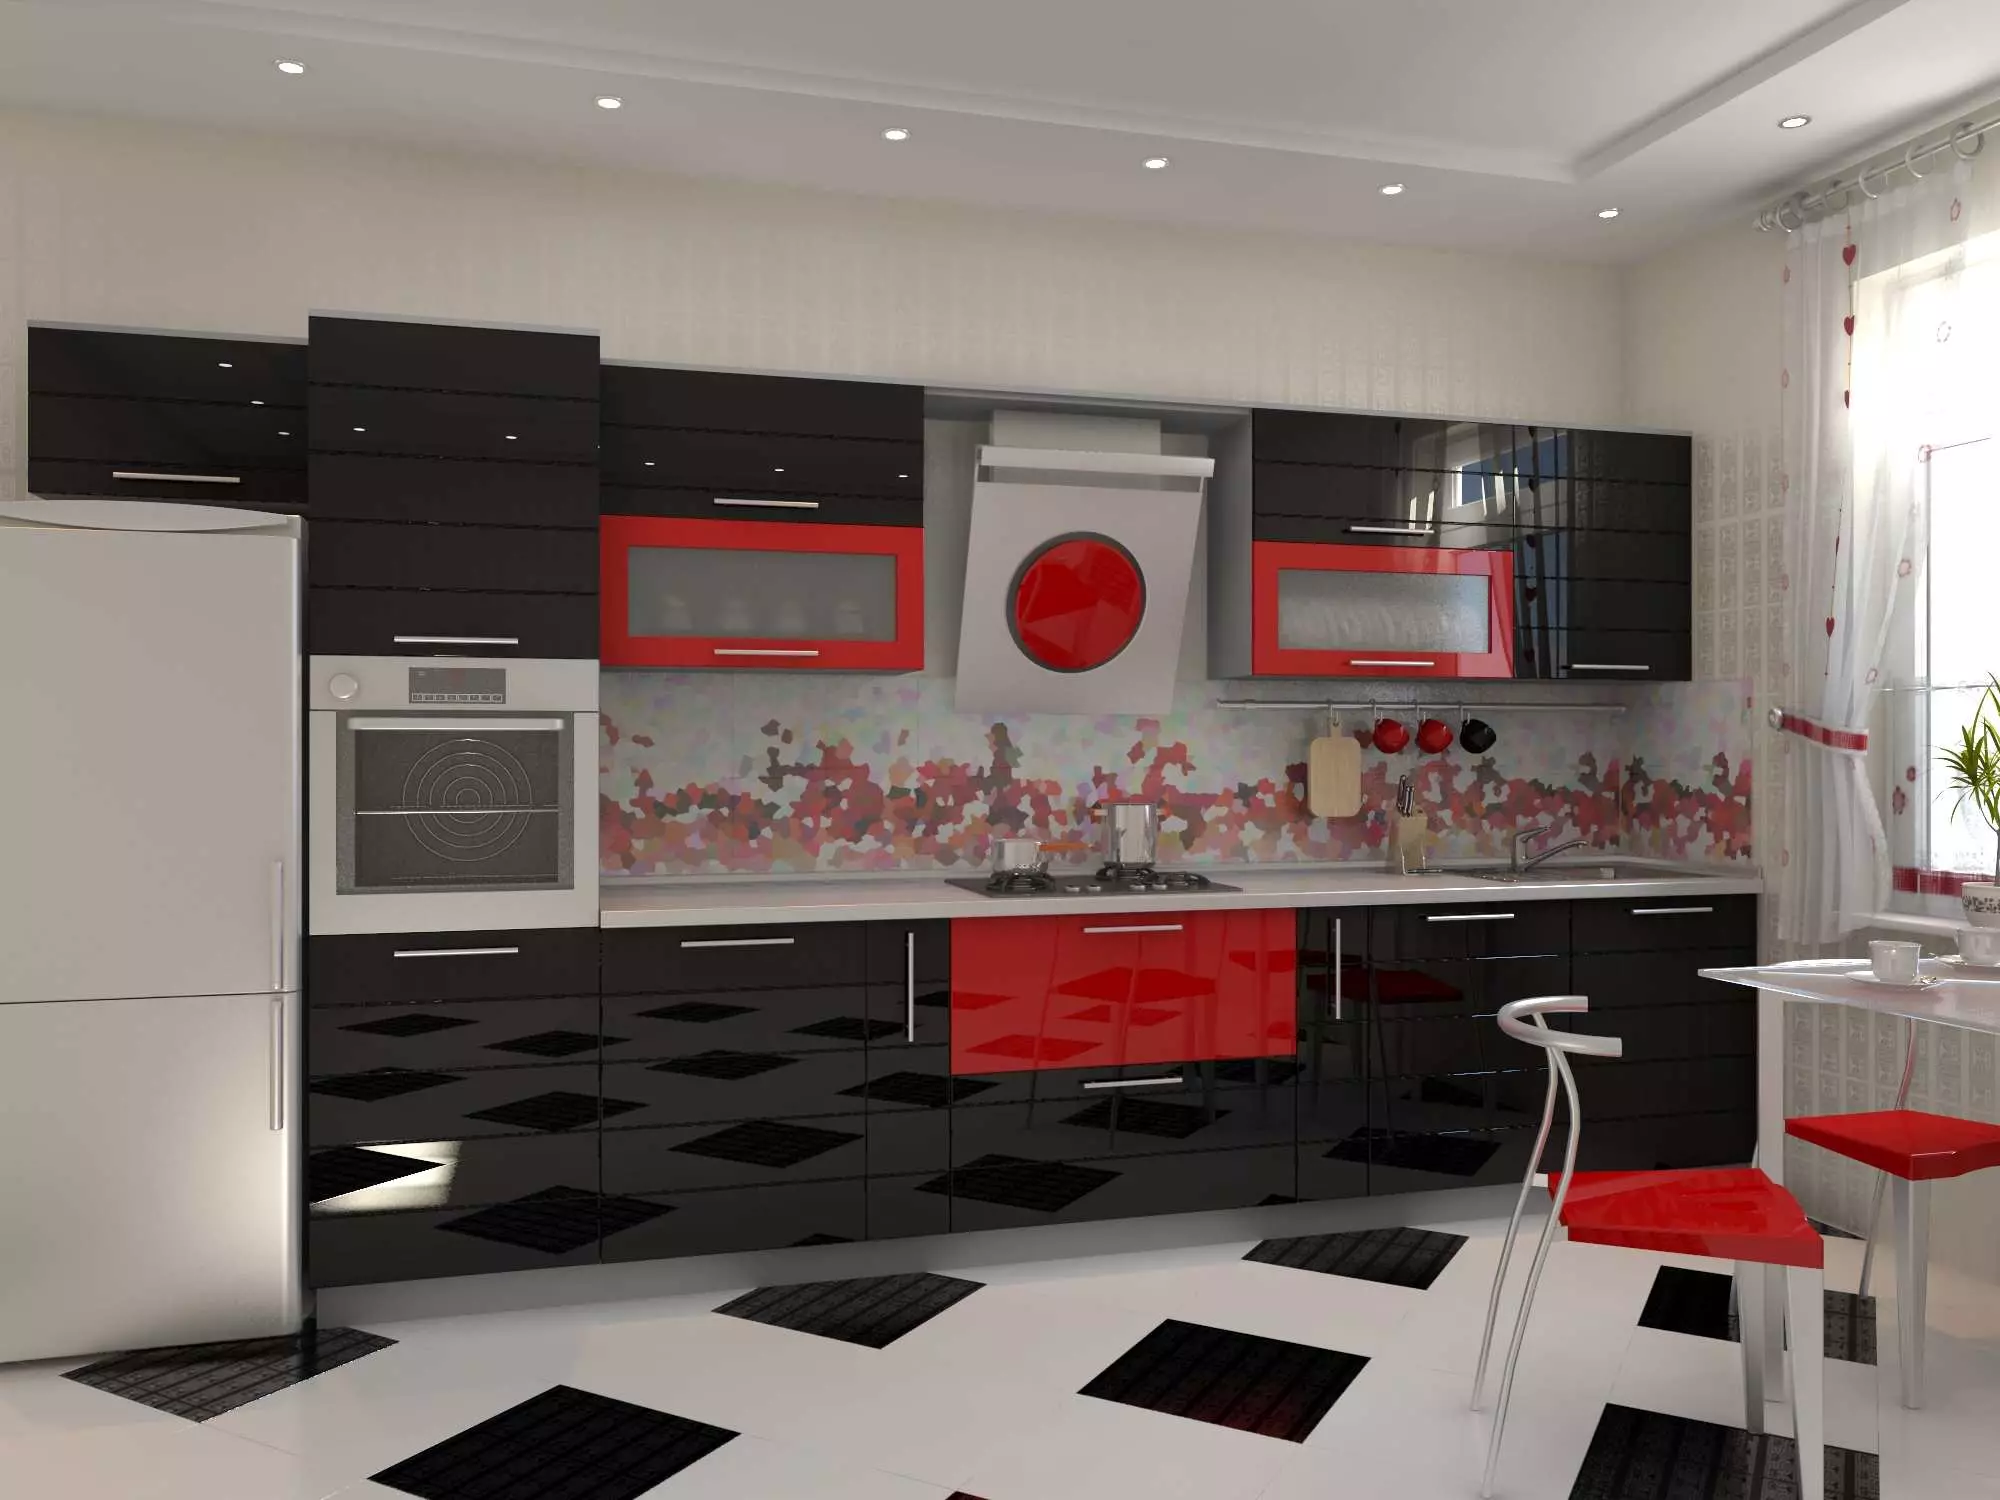 Rødt og sort køkken (77 billeder): Hjørne og lige køkken Jul og hvidt køkken i interiørdesign, blanke køkkener Rød top og sort bund 21144_45